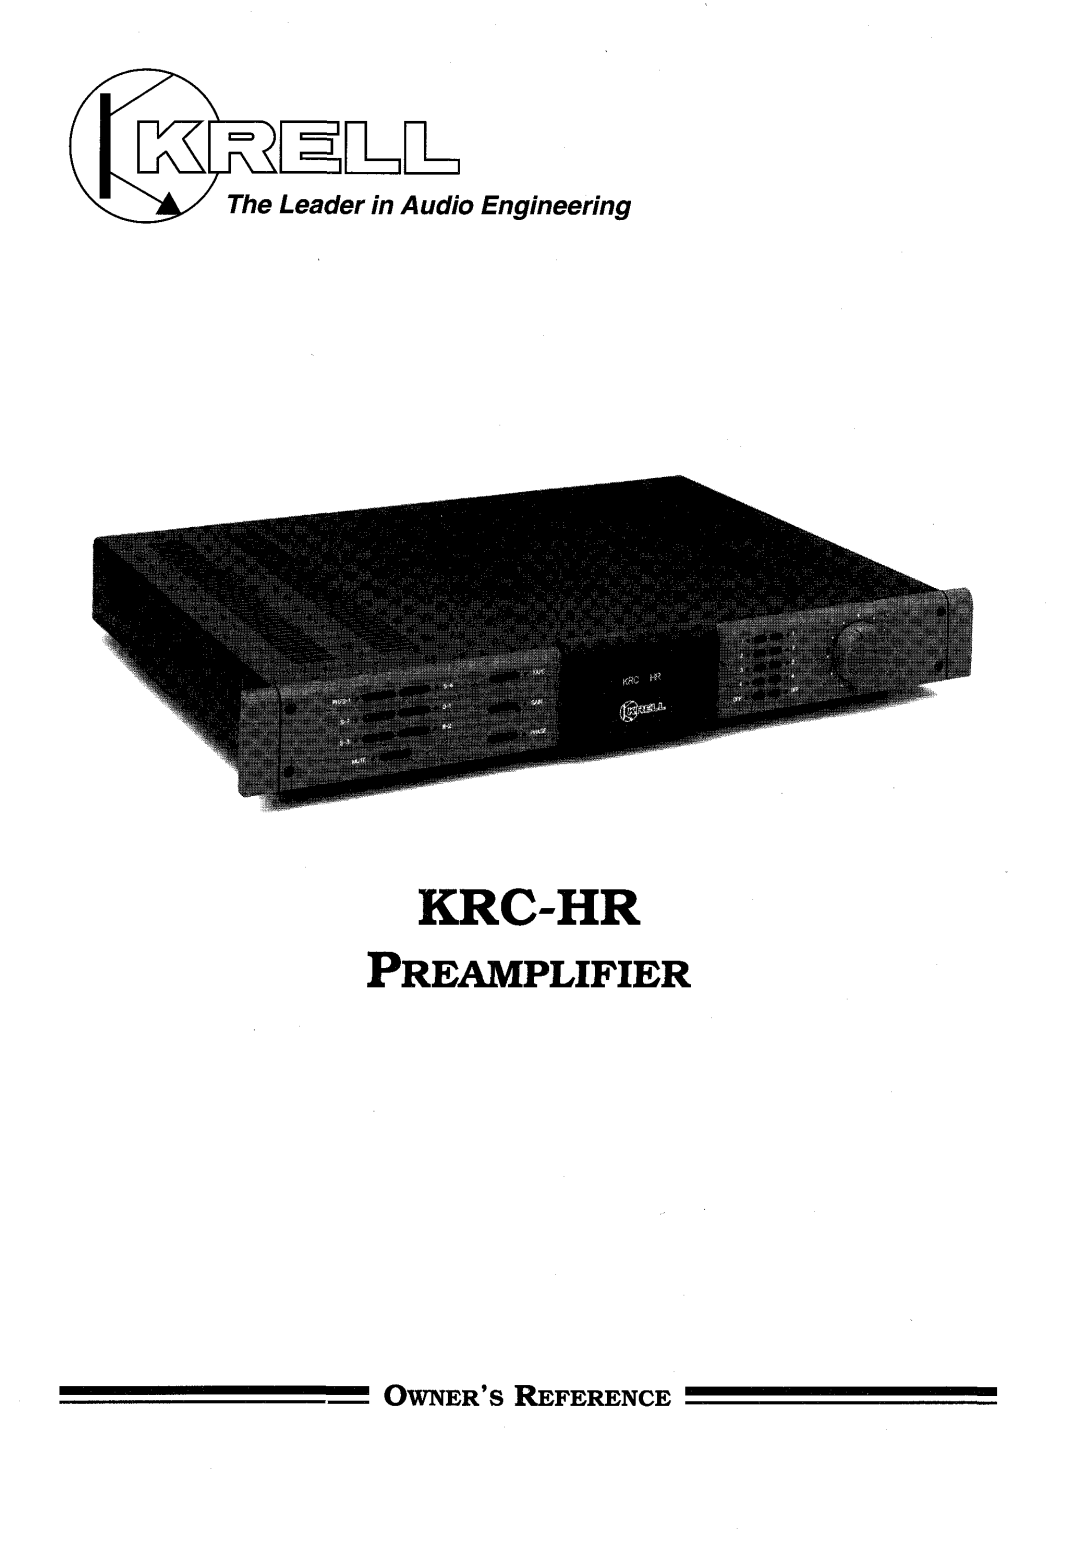 Krell Industries KRC-HR manual Krc-Hr, Preamplifier, Leader in Audio Engineering, Owners Reference 